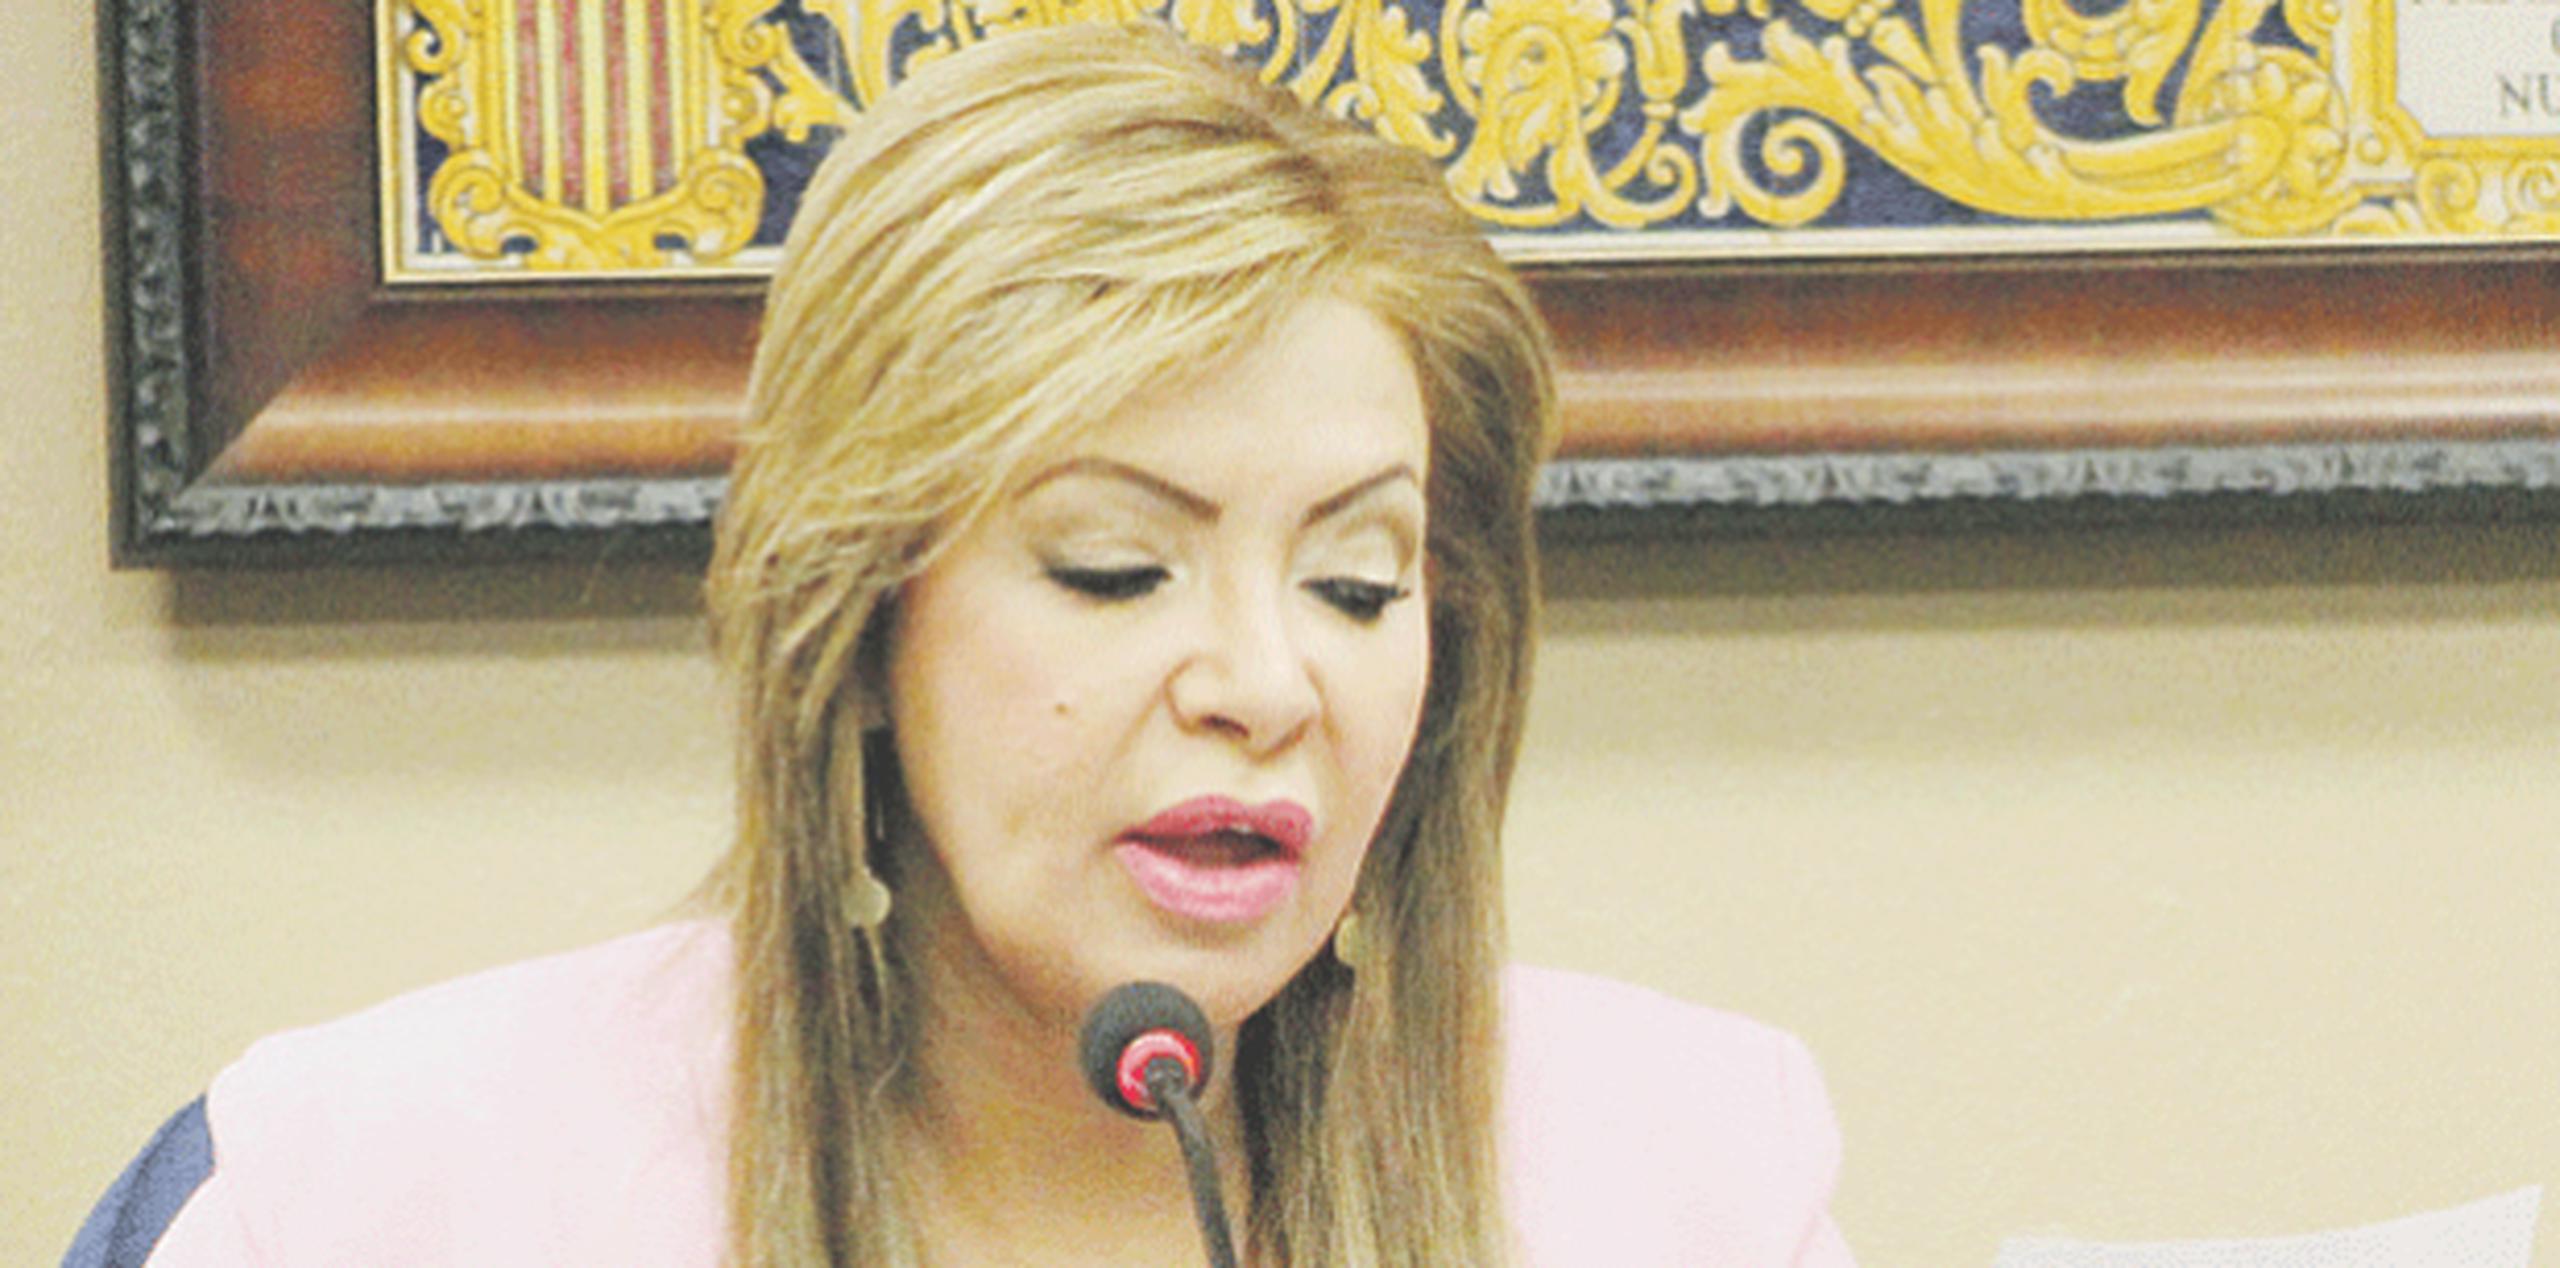 La senadora Evelyn Vázquez aseguró que va a investigar quién fue la persona que falsificó la firma del alcalde de Aguadilla. (SUMINISTRADA)